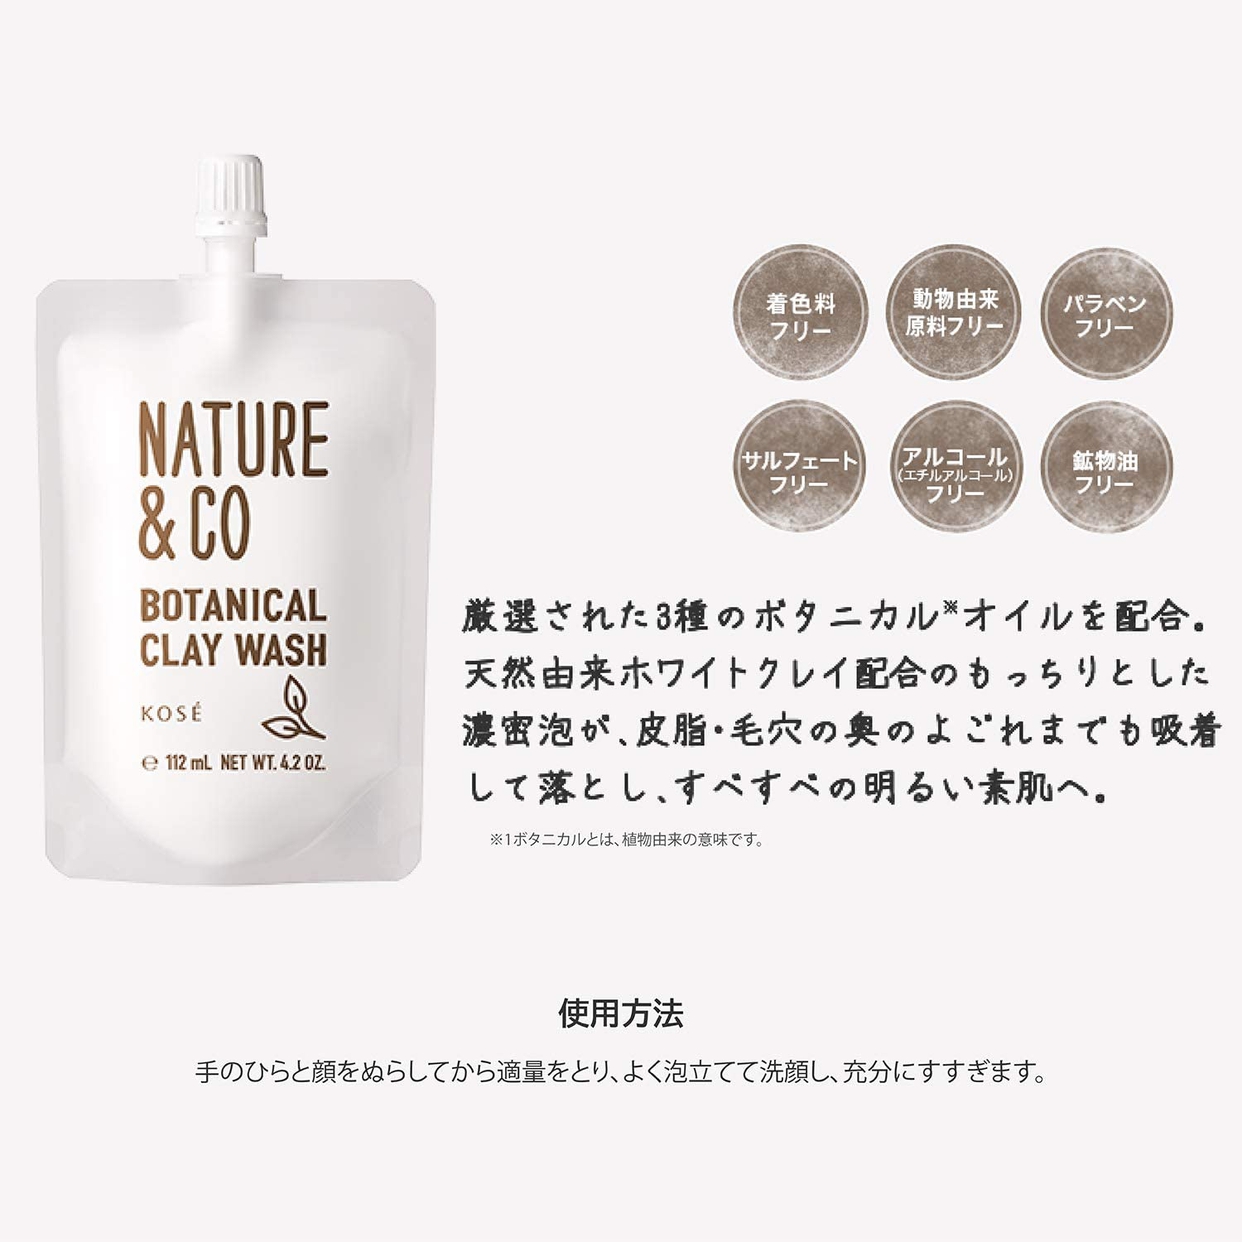 Nature&Co(ネイチャーアンドコー) ボタニカル クレイ ウォッシュの商品画像4 